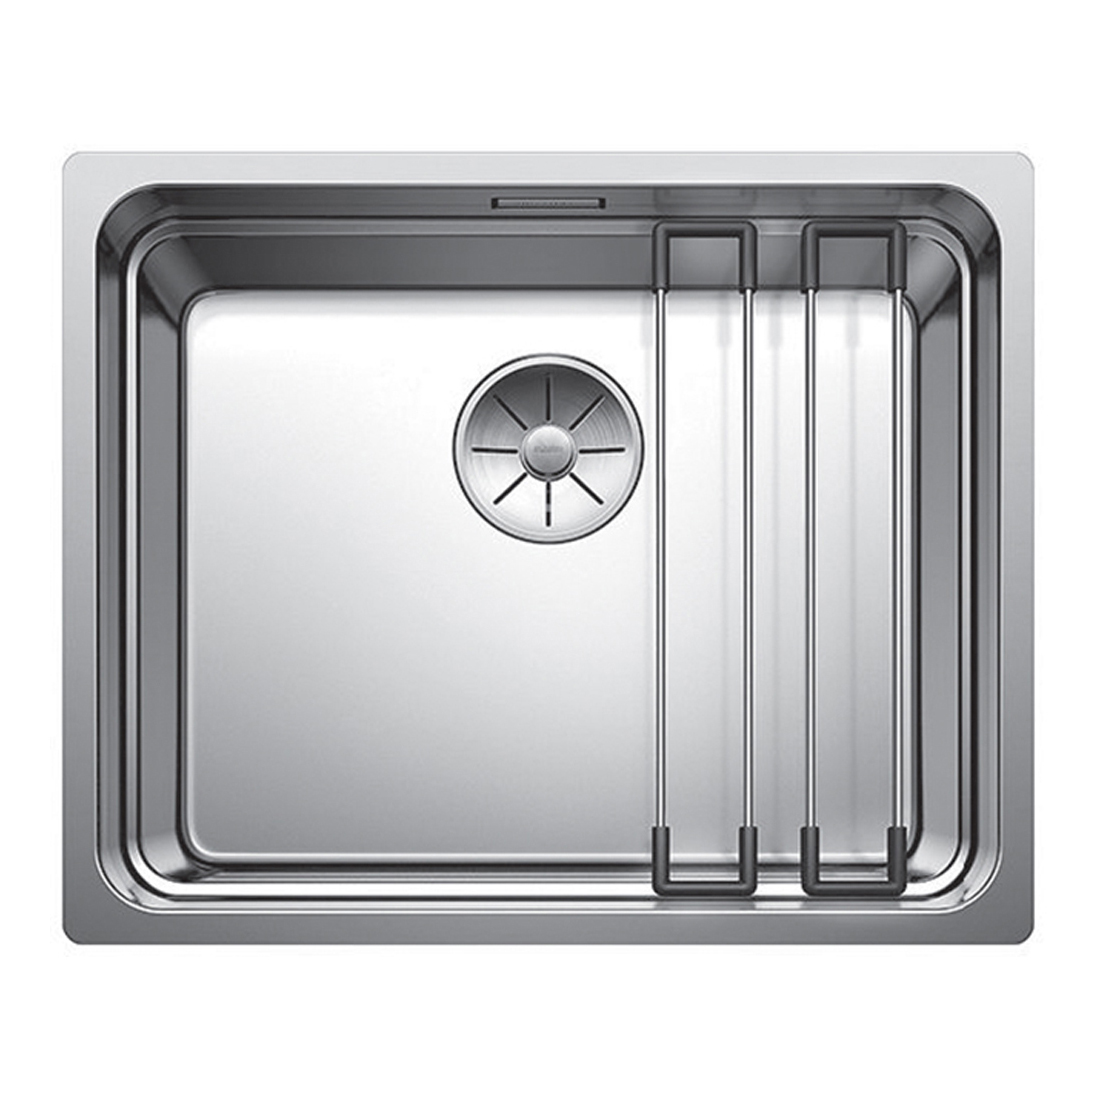 Кухонная мойка Blanco Etagon 500-IF полированная сталь кухонная мойка franke 122 0689 805 нержавеющая сталь